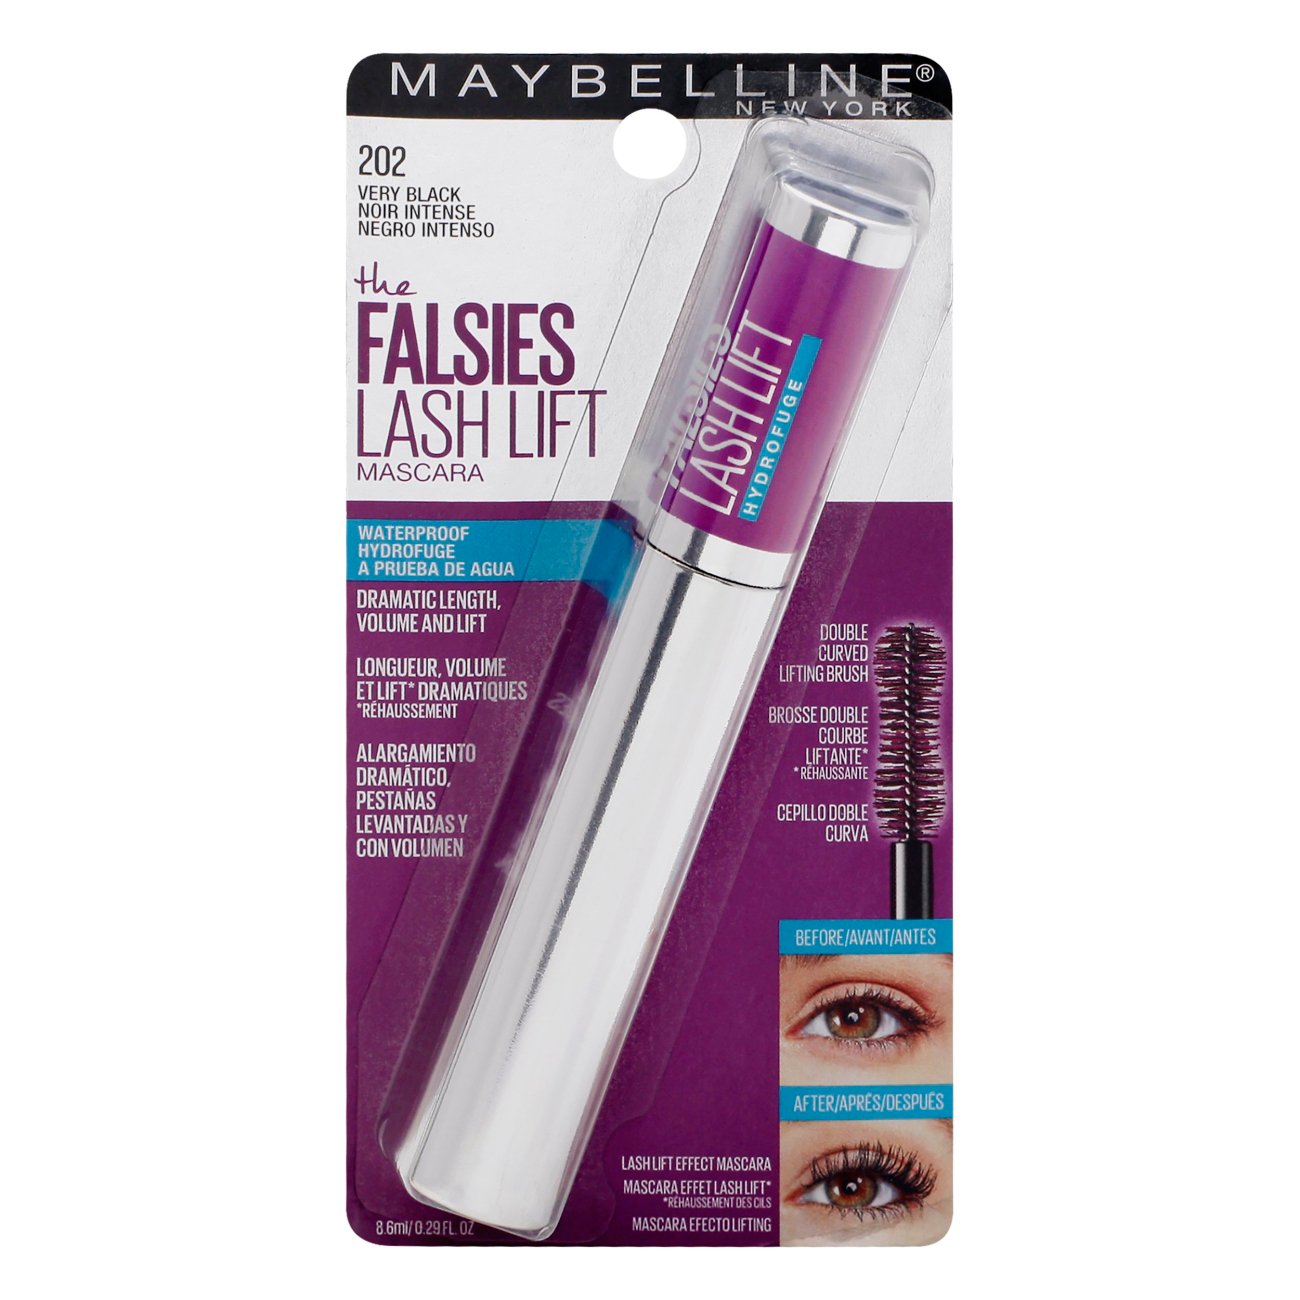 Is Maybelline Falsies Lash Lift Mascara Waterproof?